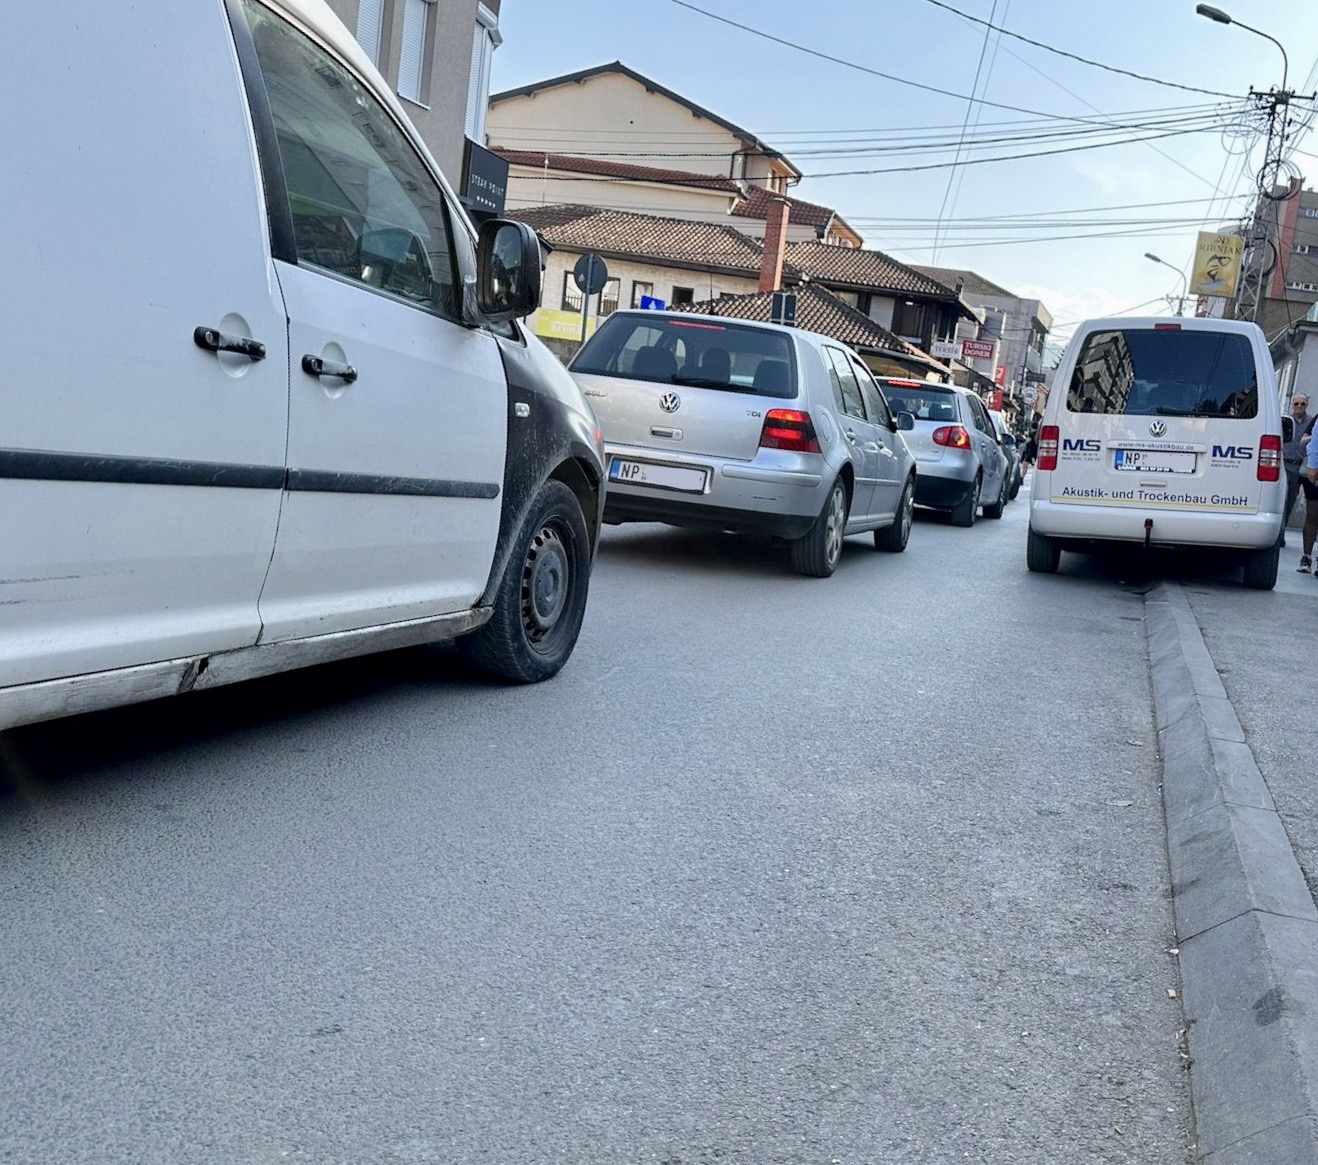 Skoro hiljadu vozača u Novom Pazaru kažnjeno zbog nepropisnog parkiranja